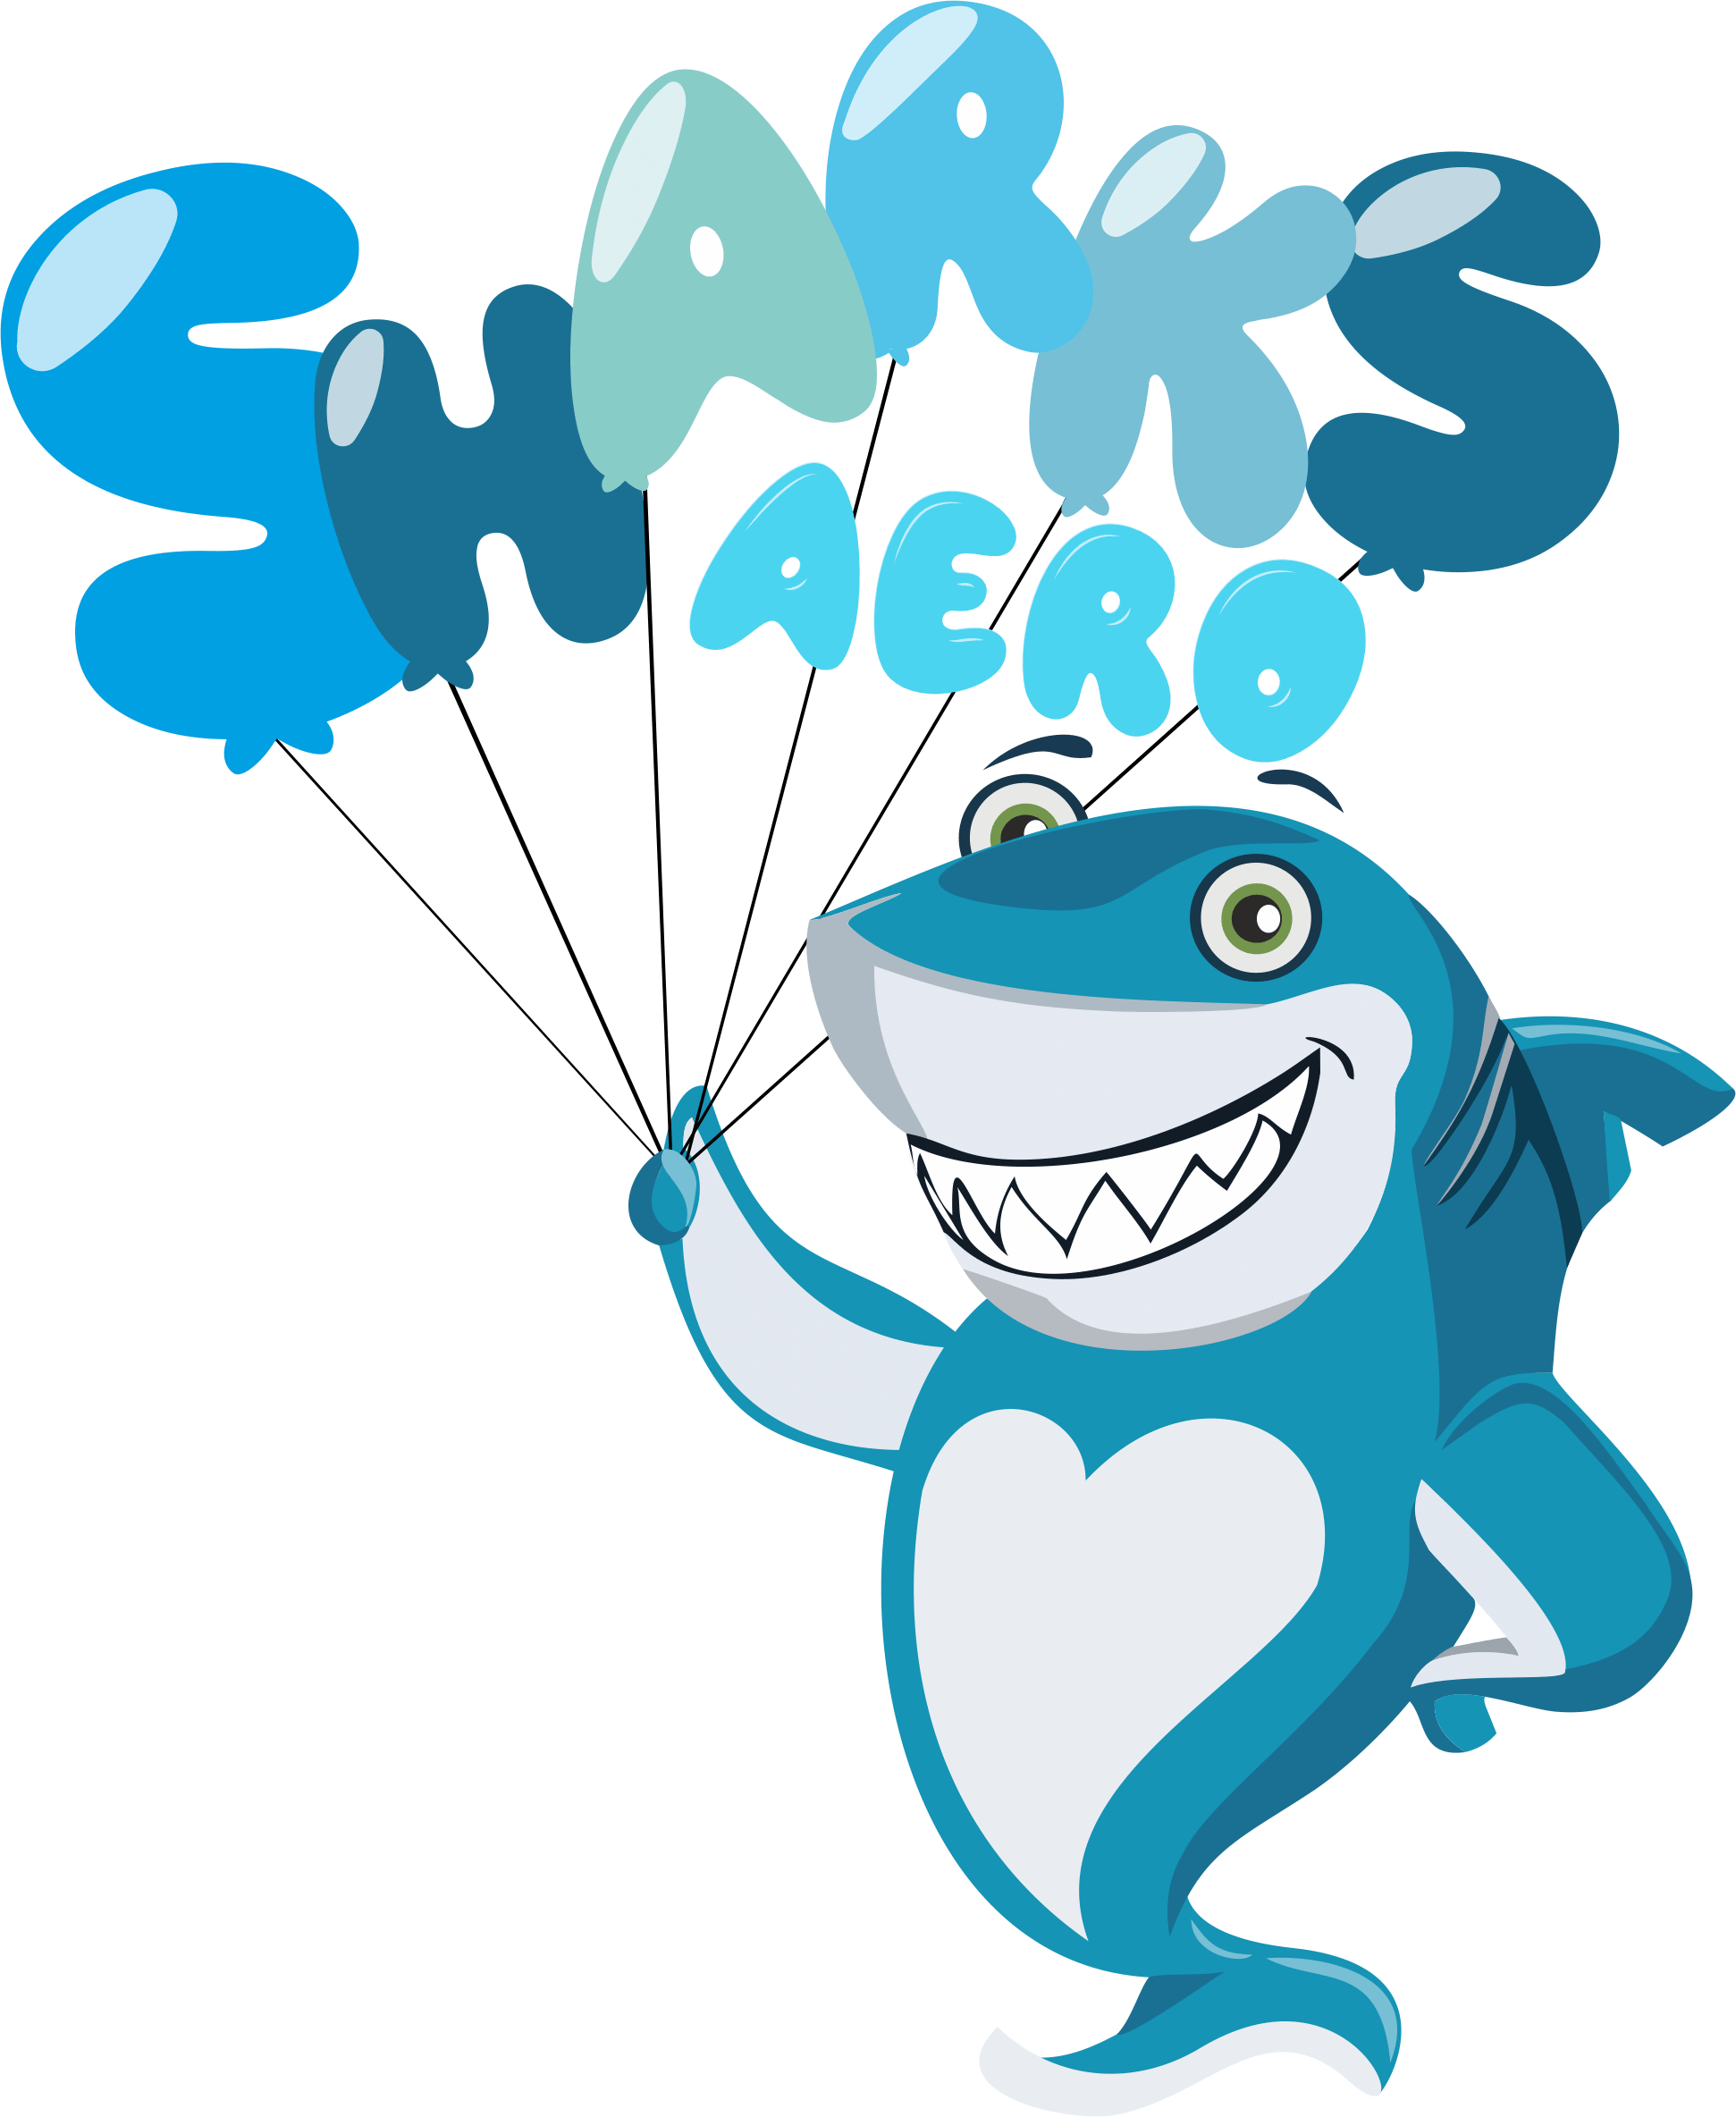 Sharks Aero